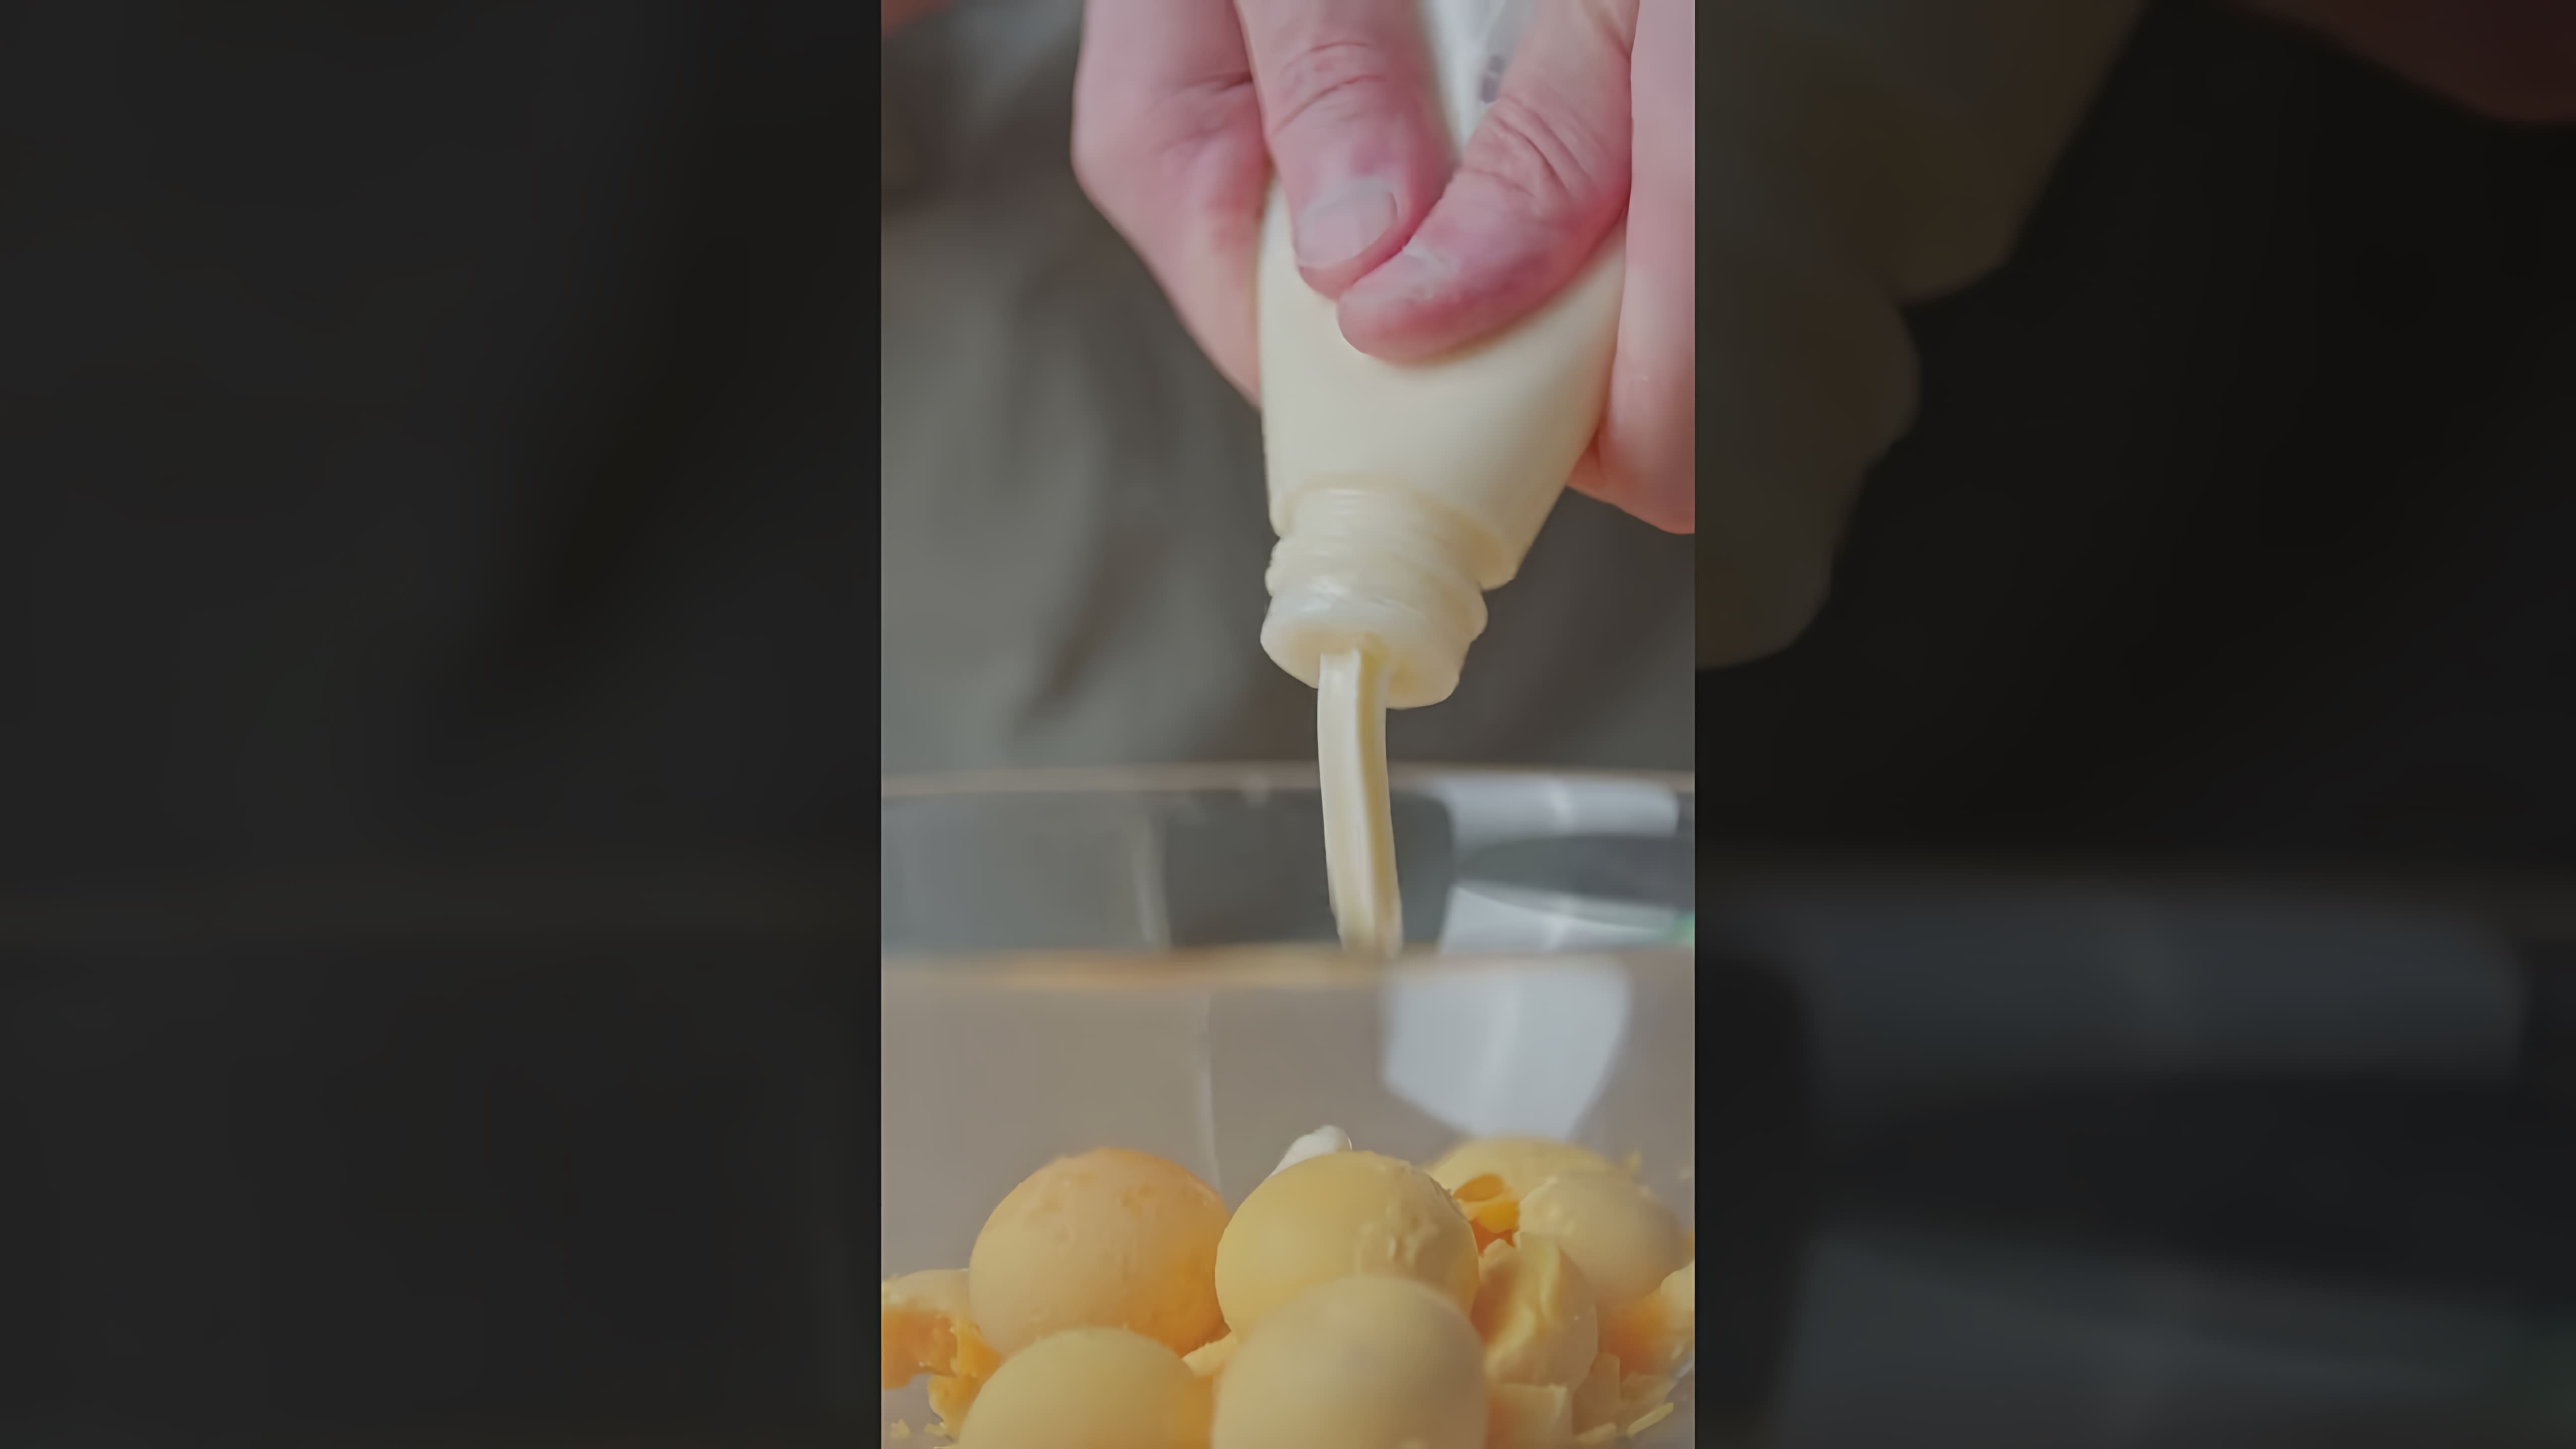 В этом видео-ролике демонстрируется рецепт приготовления японского сэндвича с яйцом, который получил название "Имба сендвич 8